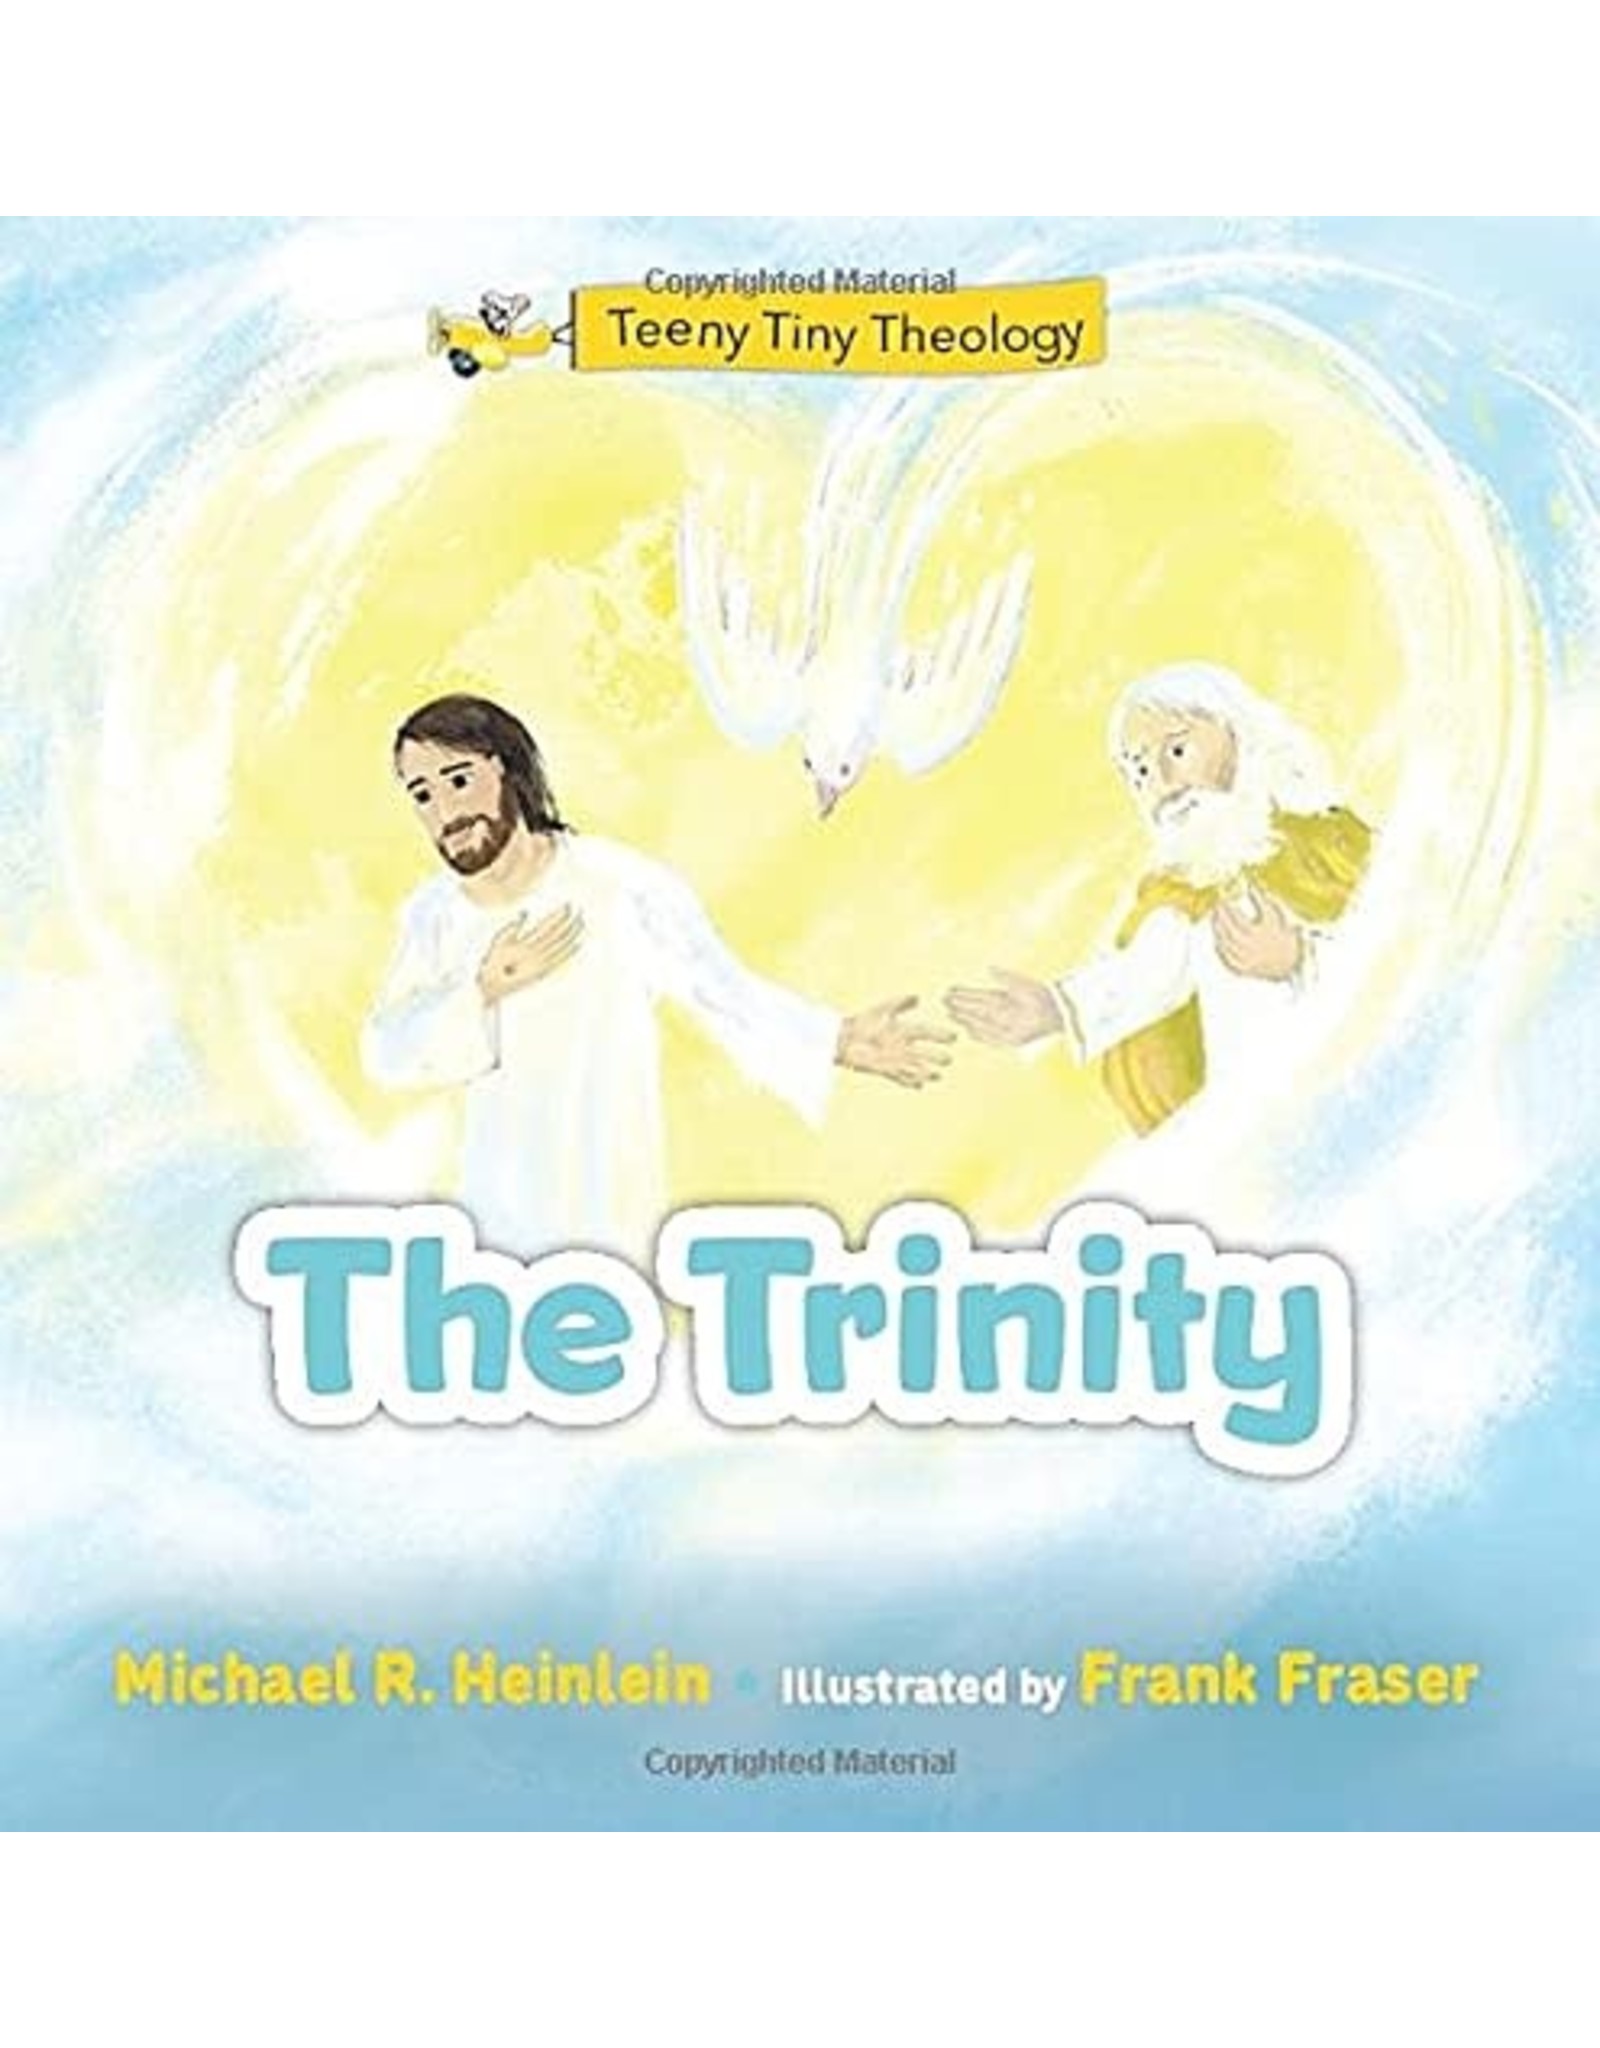 OSV (Our Sunday Visitor) Teeny Tiny Theology: The Trinity